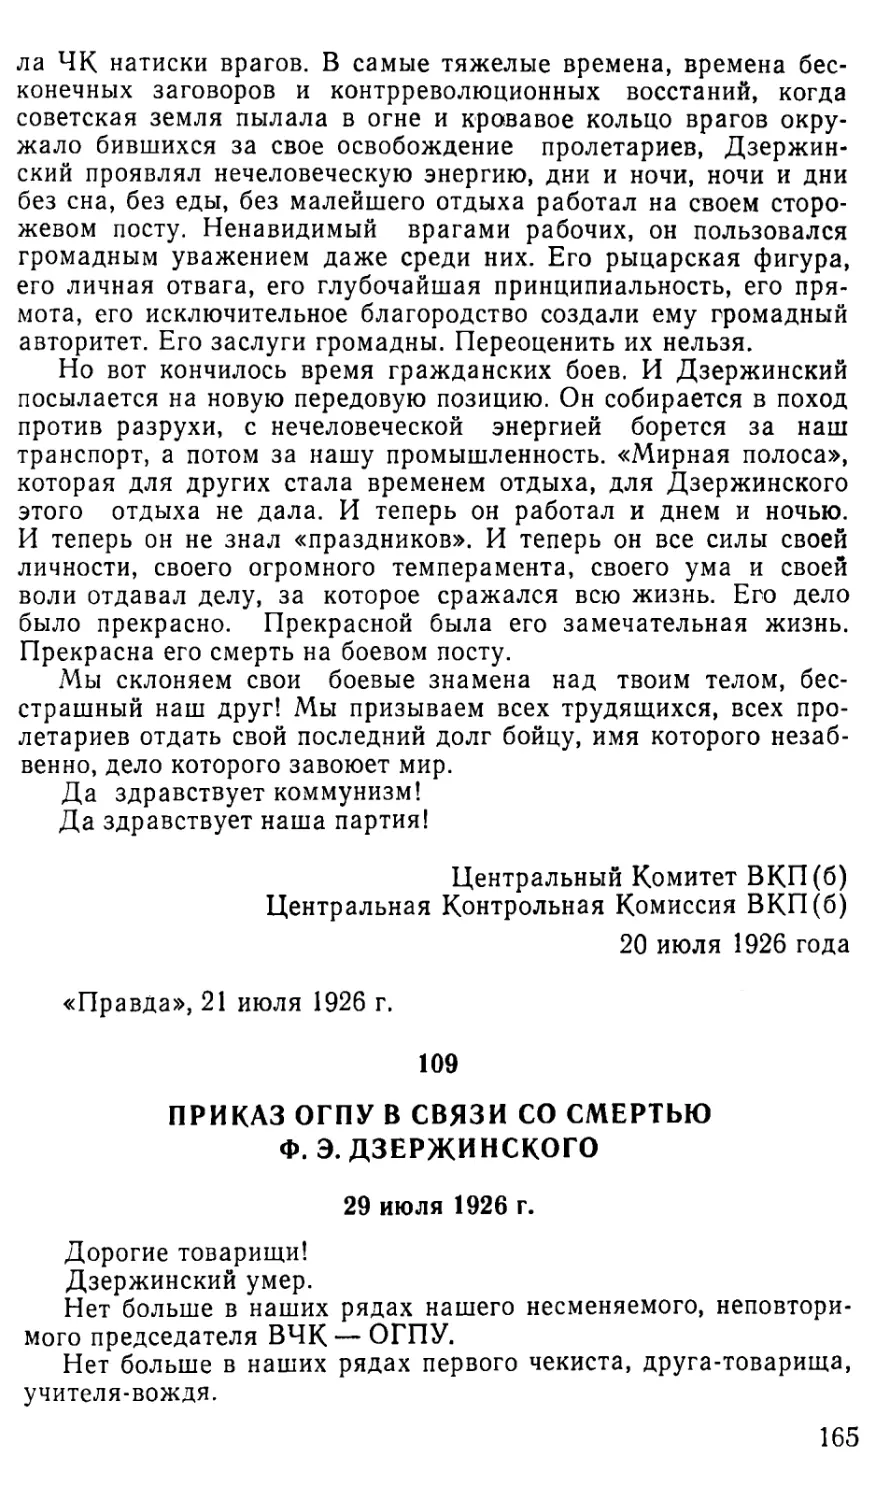 109. Приказ ОГПУ в связи со смертью Ф. Э. Дзержинского. 29 июля 1926 г